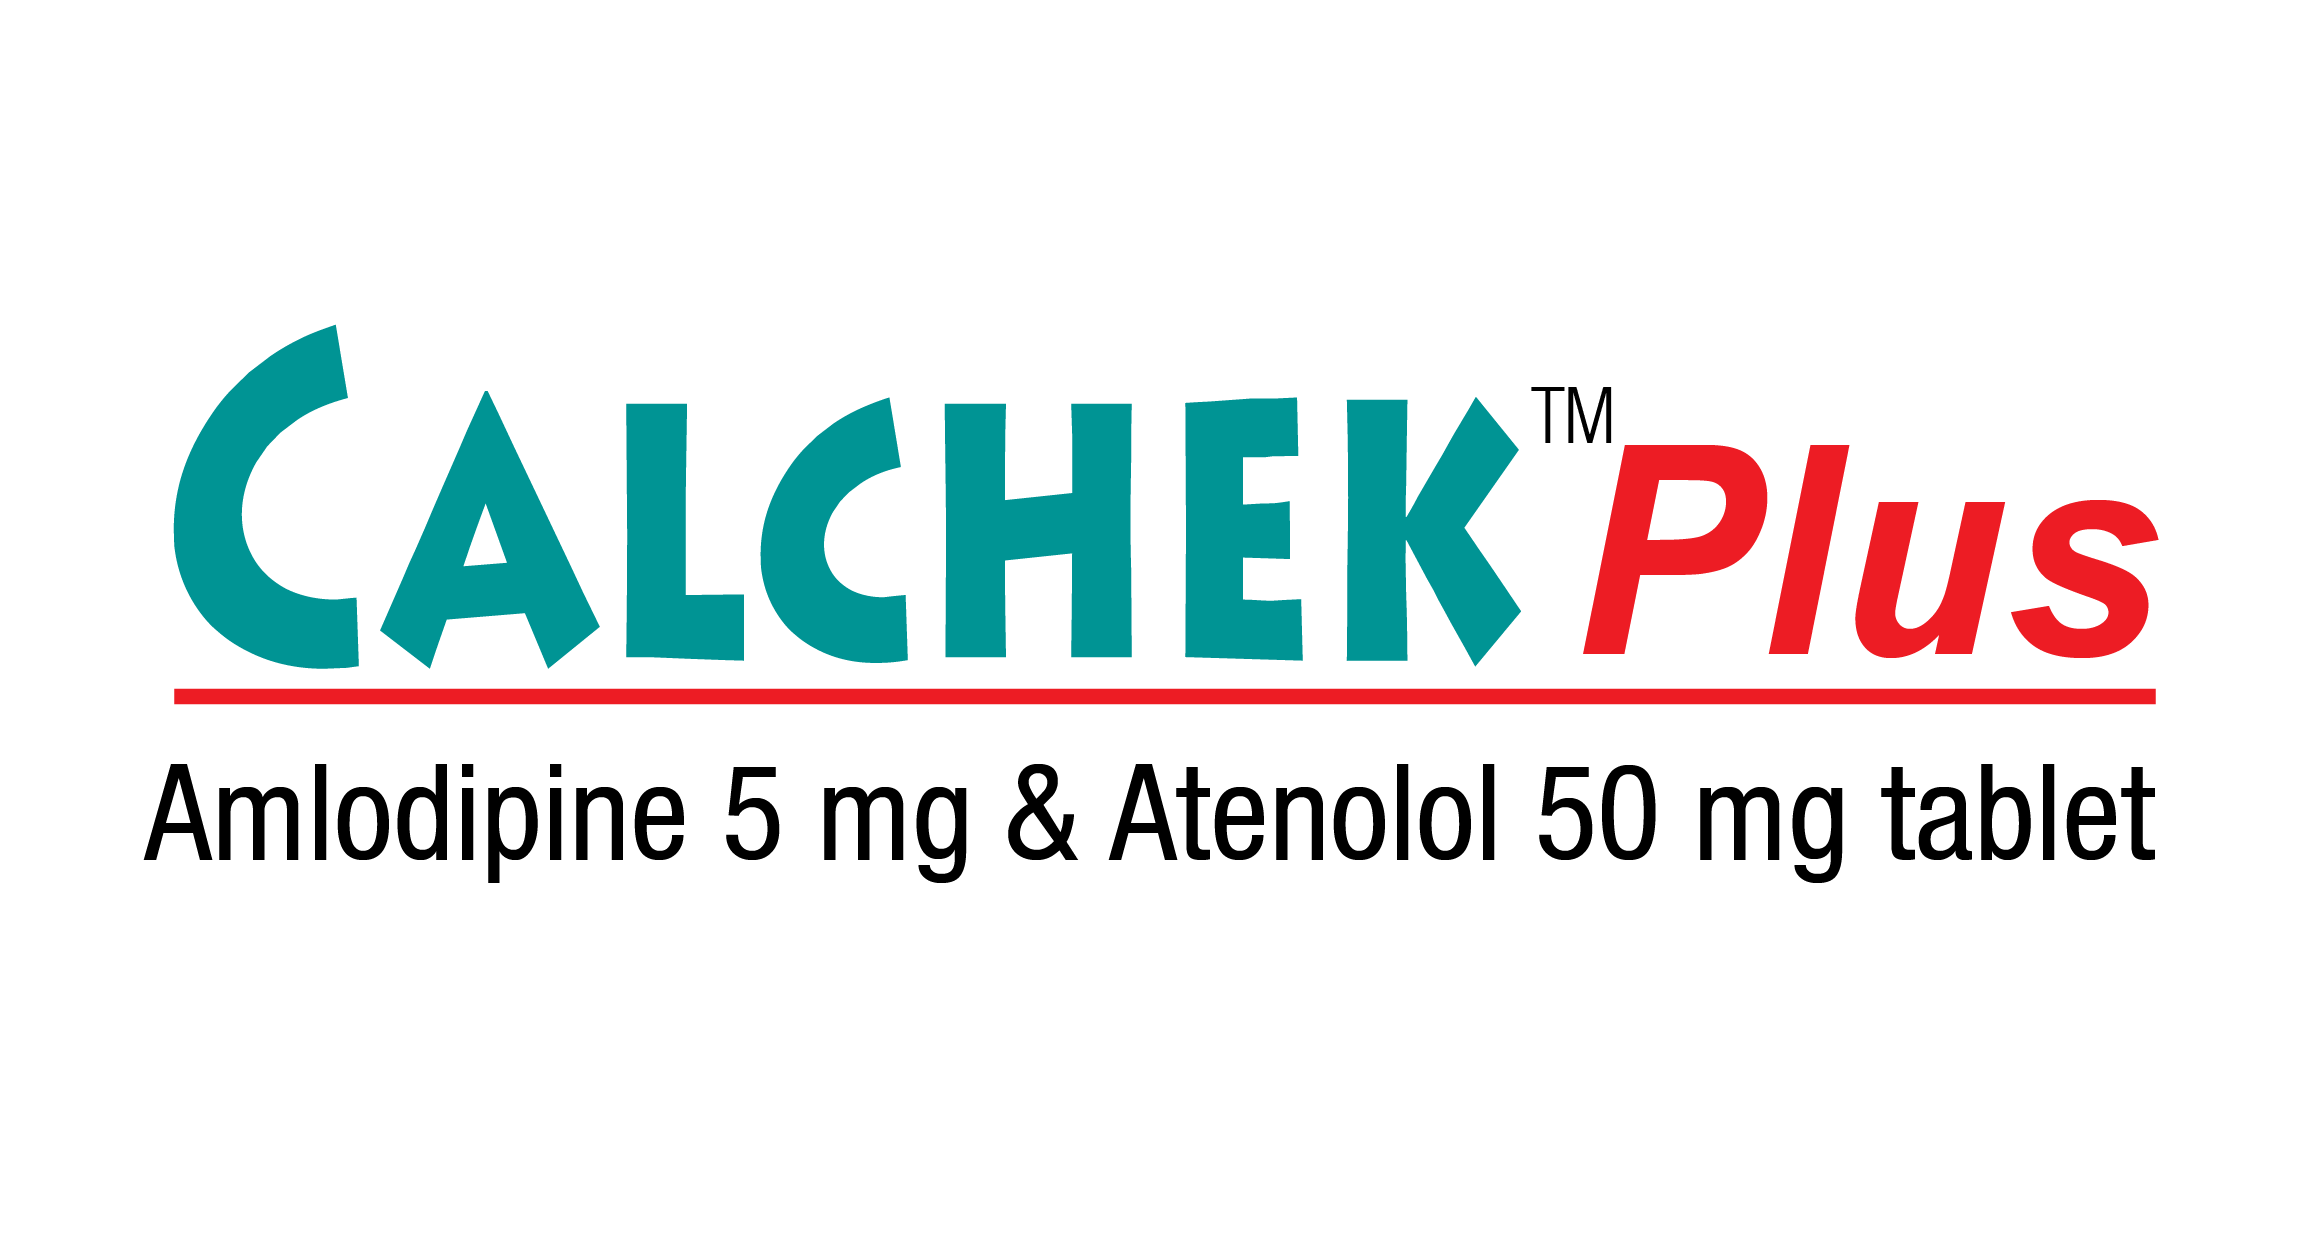 Calchek Plus